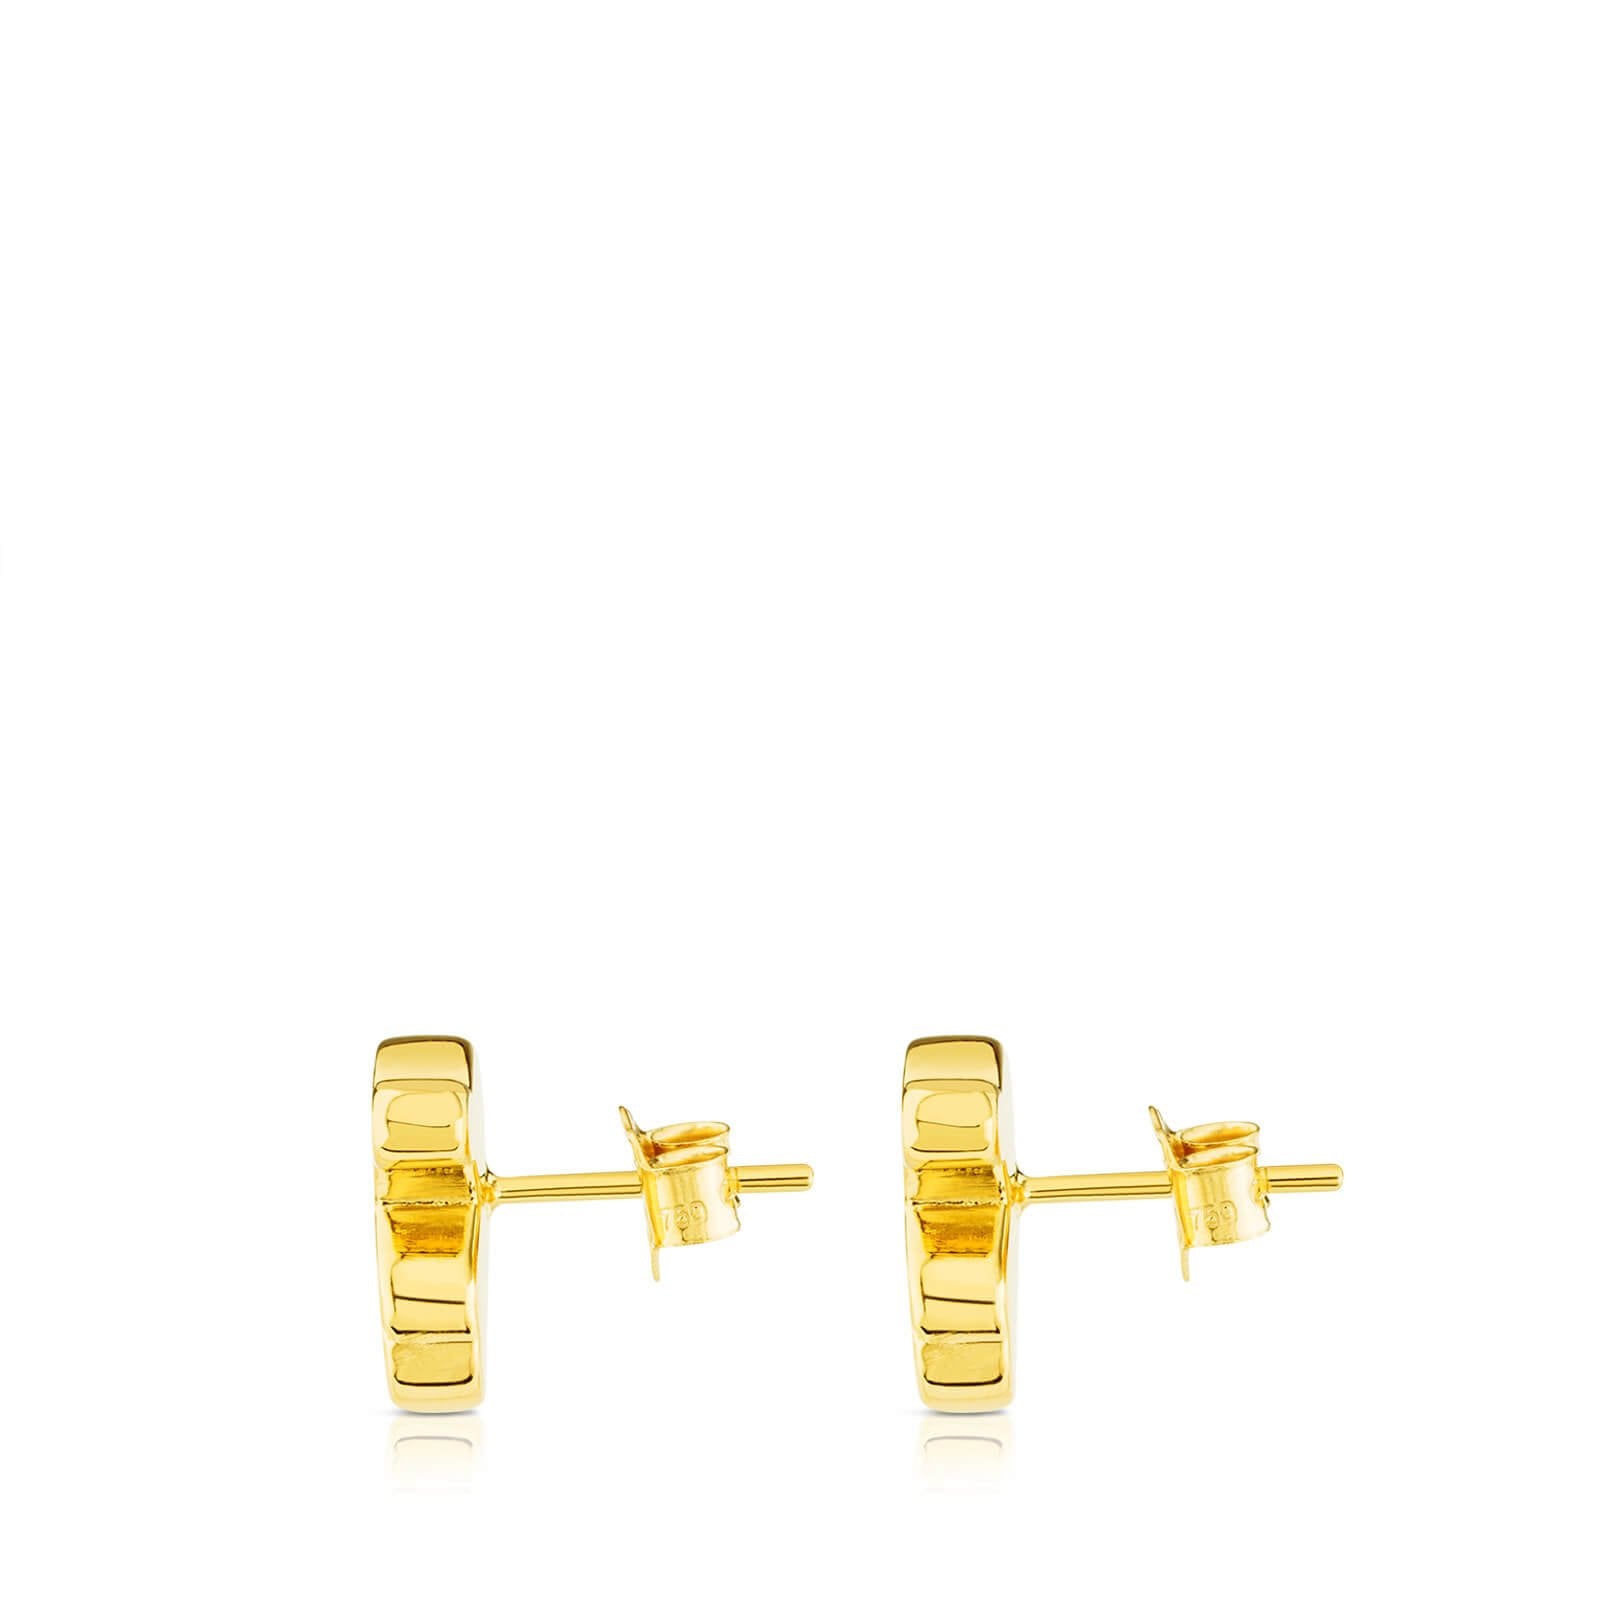 TOUS Gold Sweet Dolls Earrings - Monarch Jewels Alaska